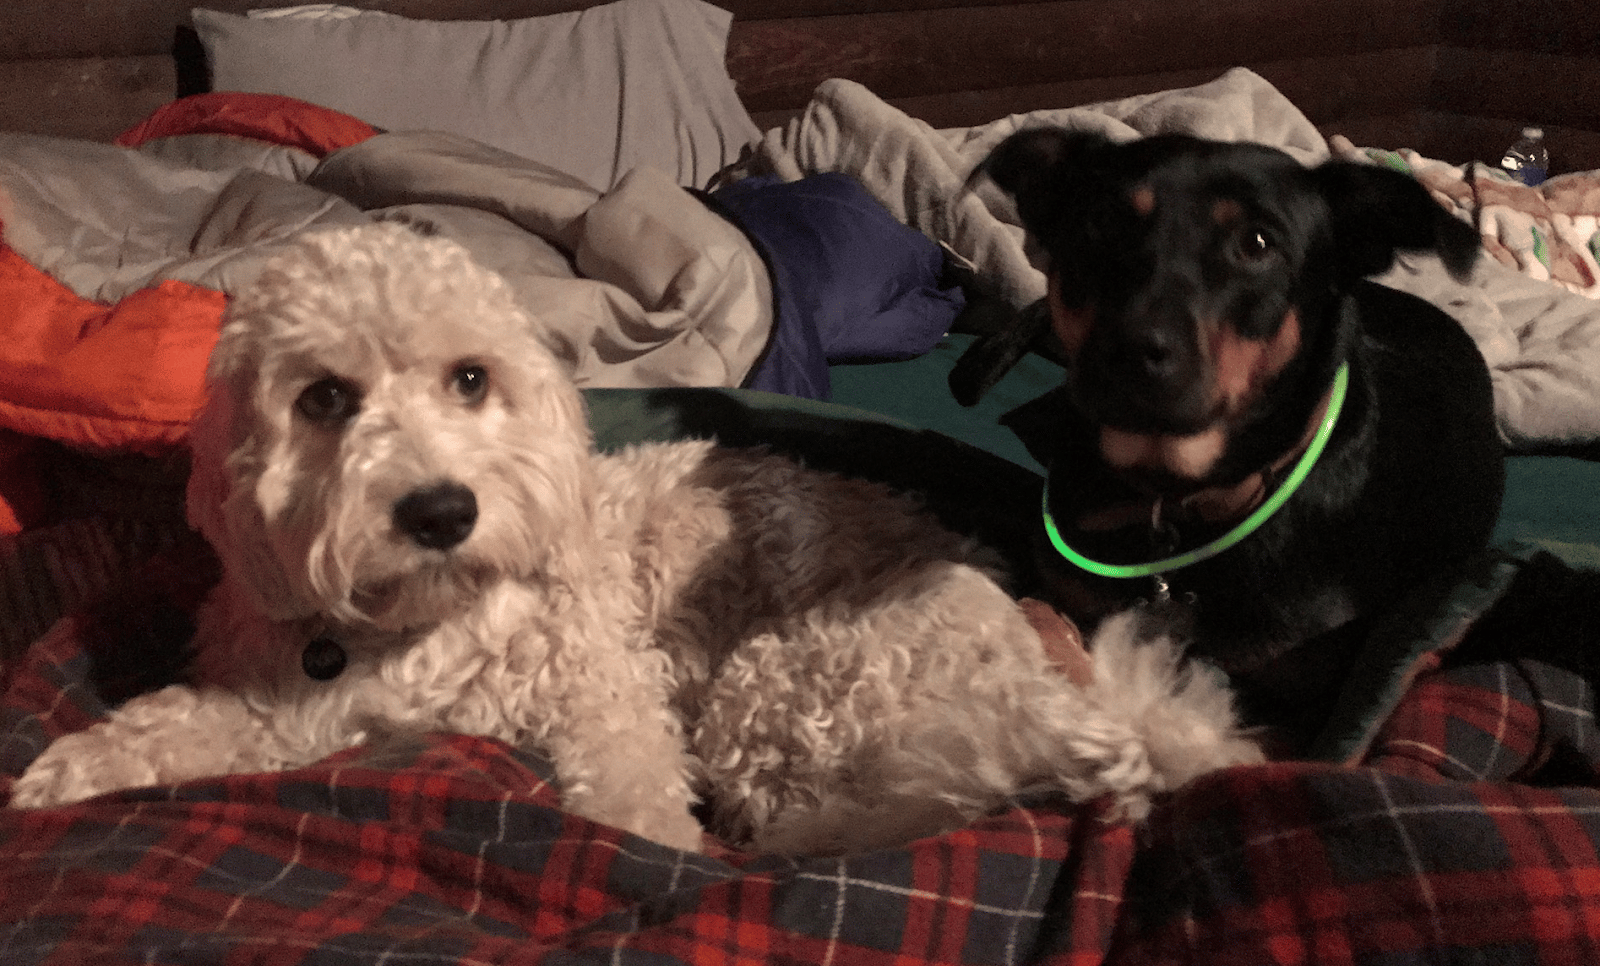   dois cachorros em uma cama